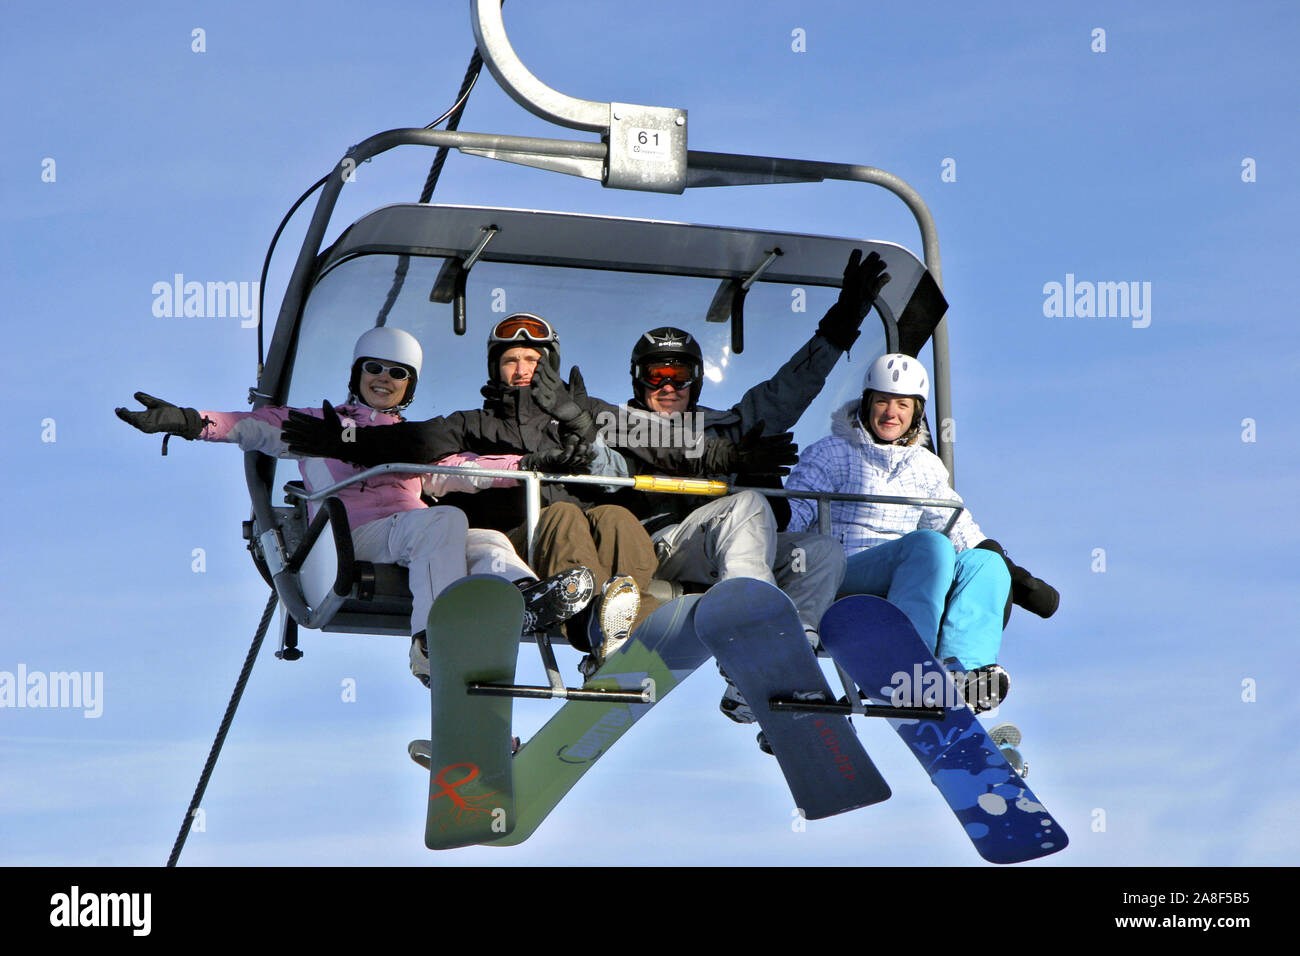 Am Skilift, Sessellift mit 4 Personen, MR: No Stock Photo